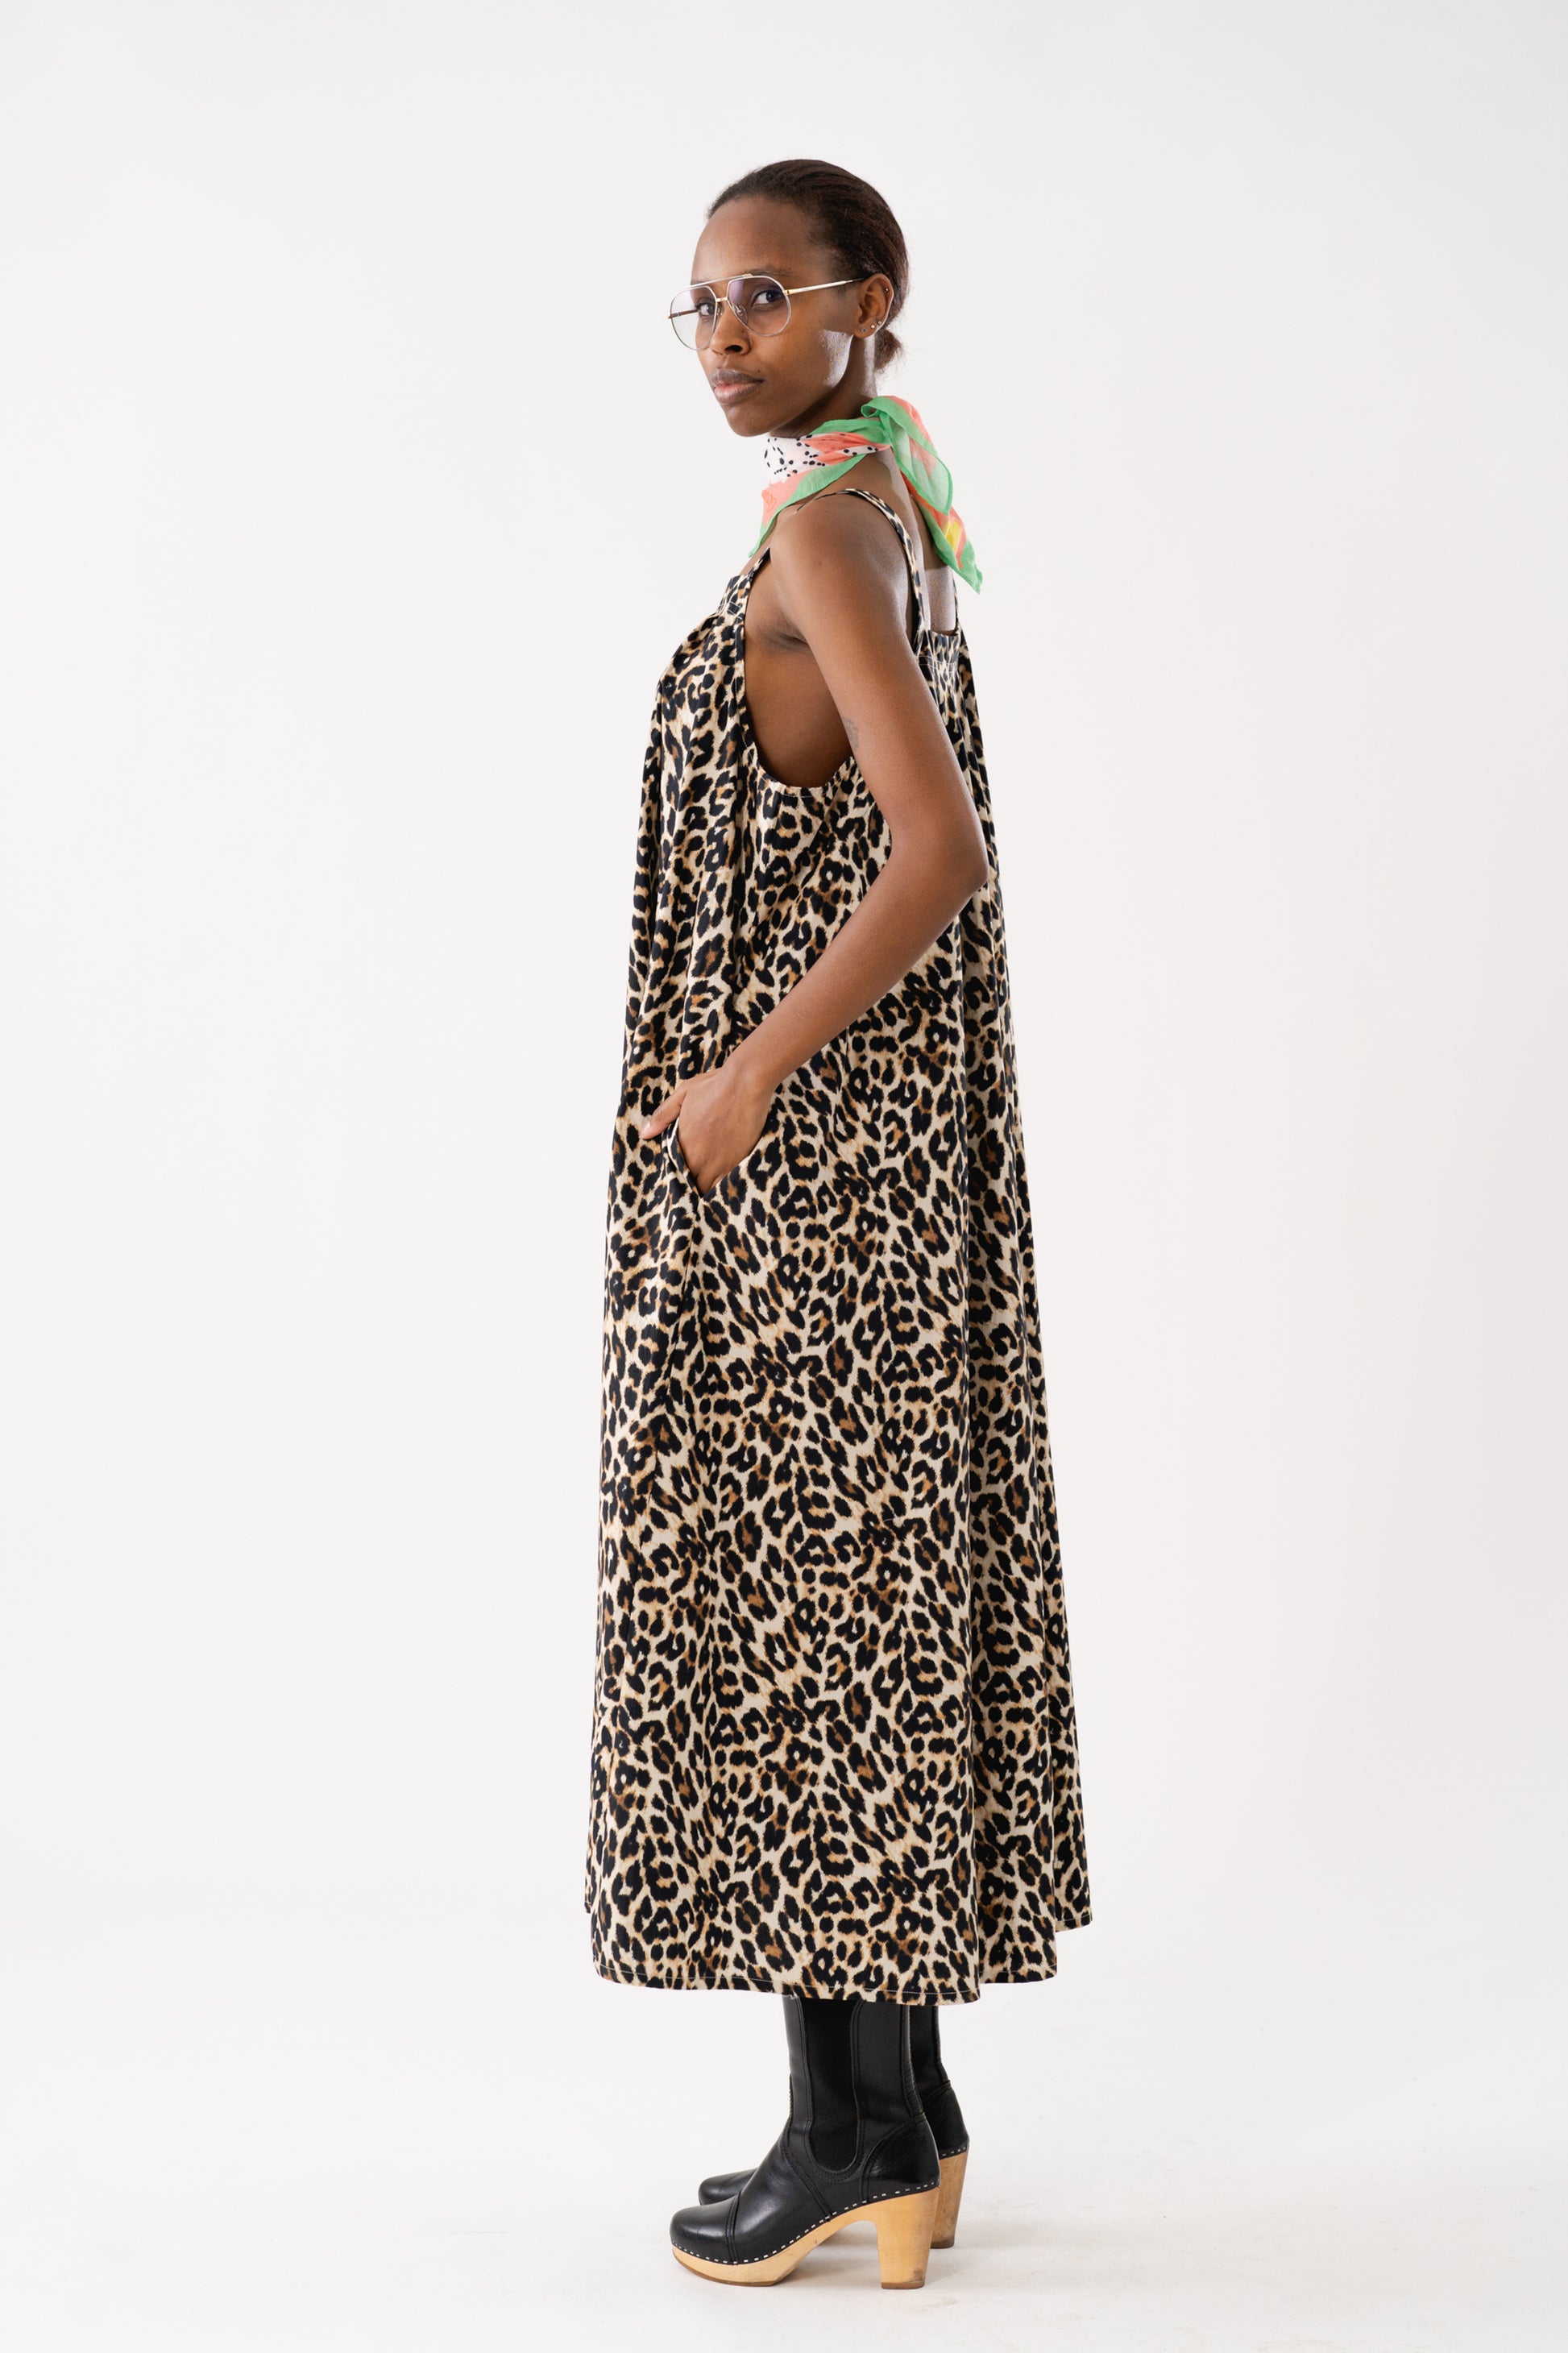 Lollys Laundry LungoLL Maxi Dress SL Dress 72 Leopard Print